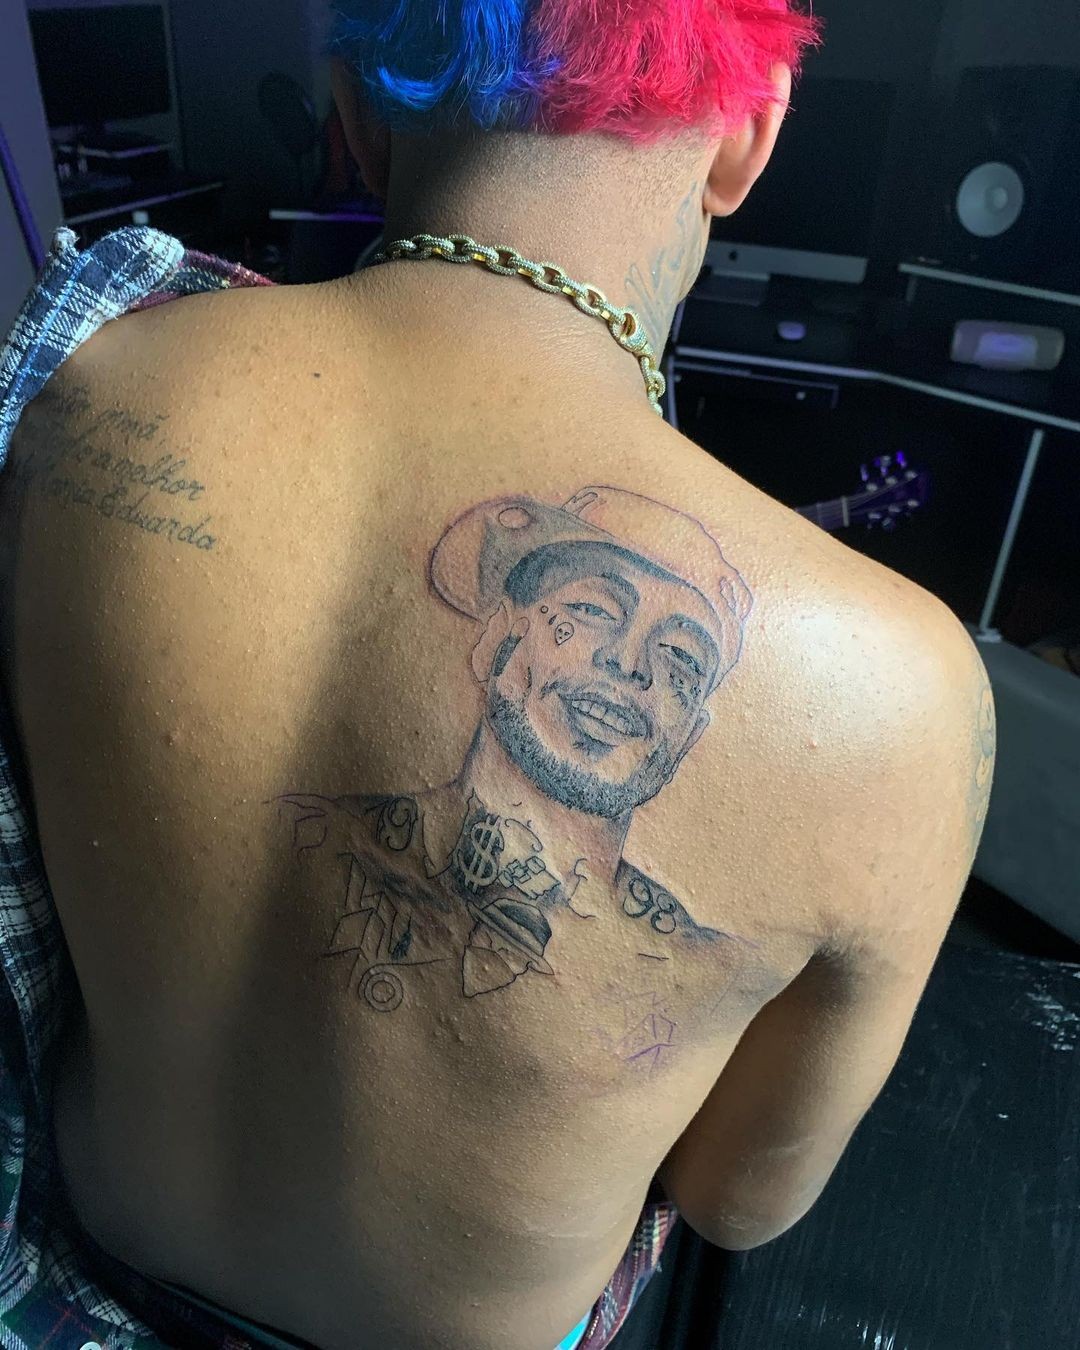 MC Brinquedo fez tatuagem em homenagem ao amigo (Foto: Reprodução/Instagram)